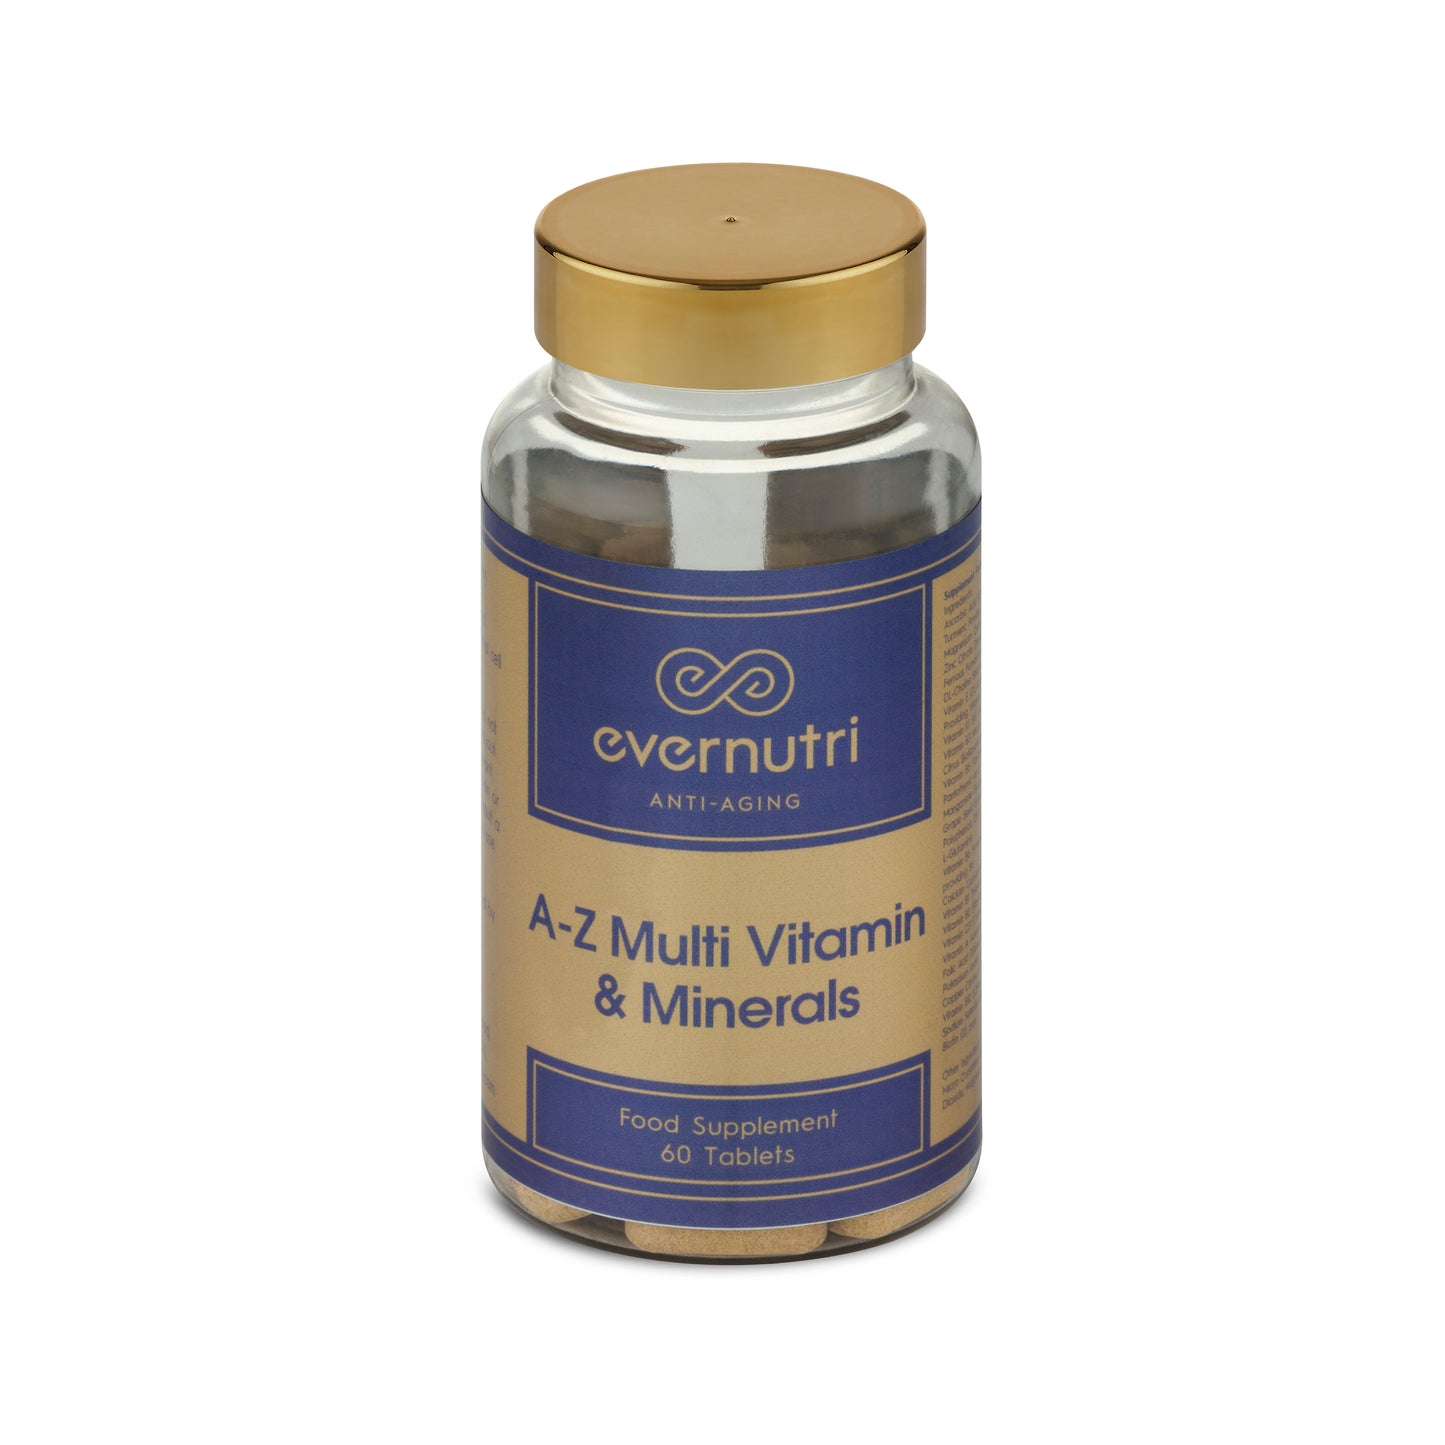 A-Z Multi Vitamin & Minerals